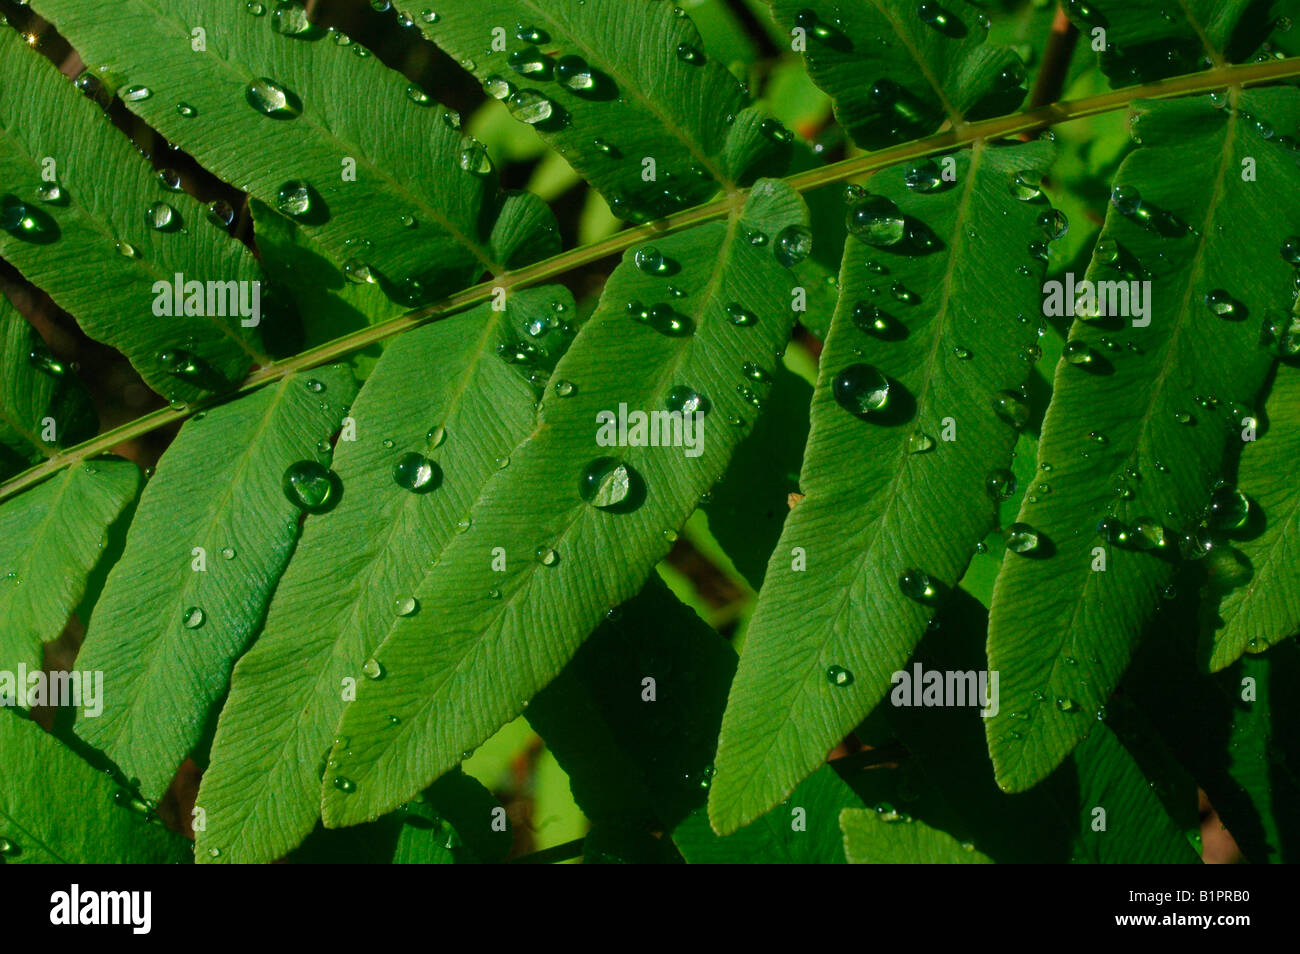 Dew drops on fern leaf Asturias region SPAIN Stock Photo